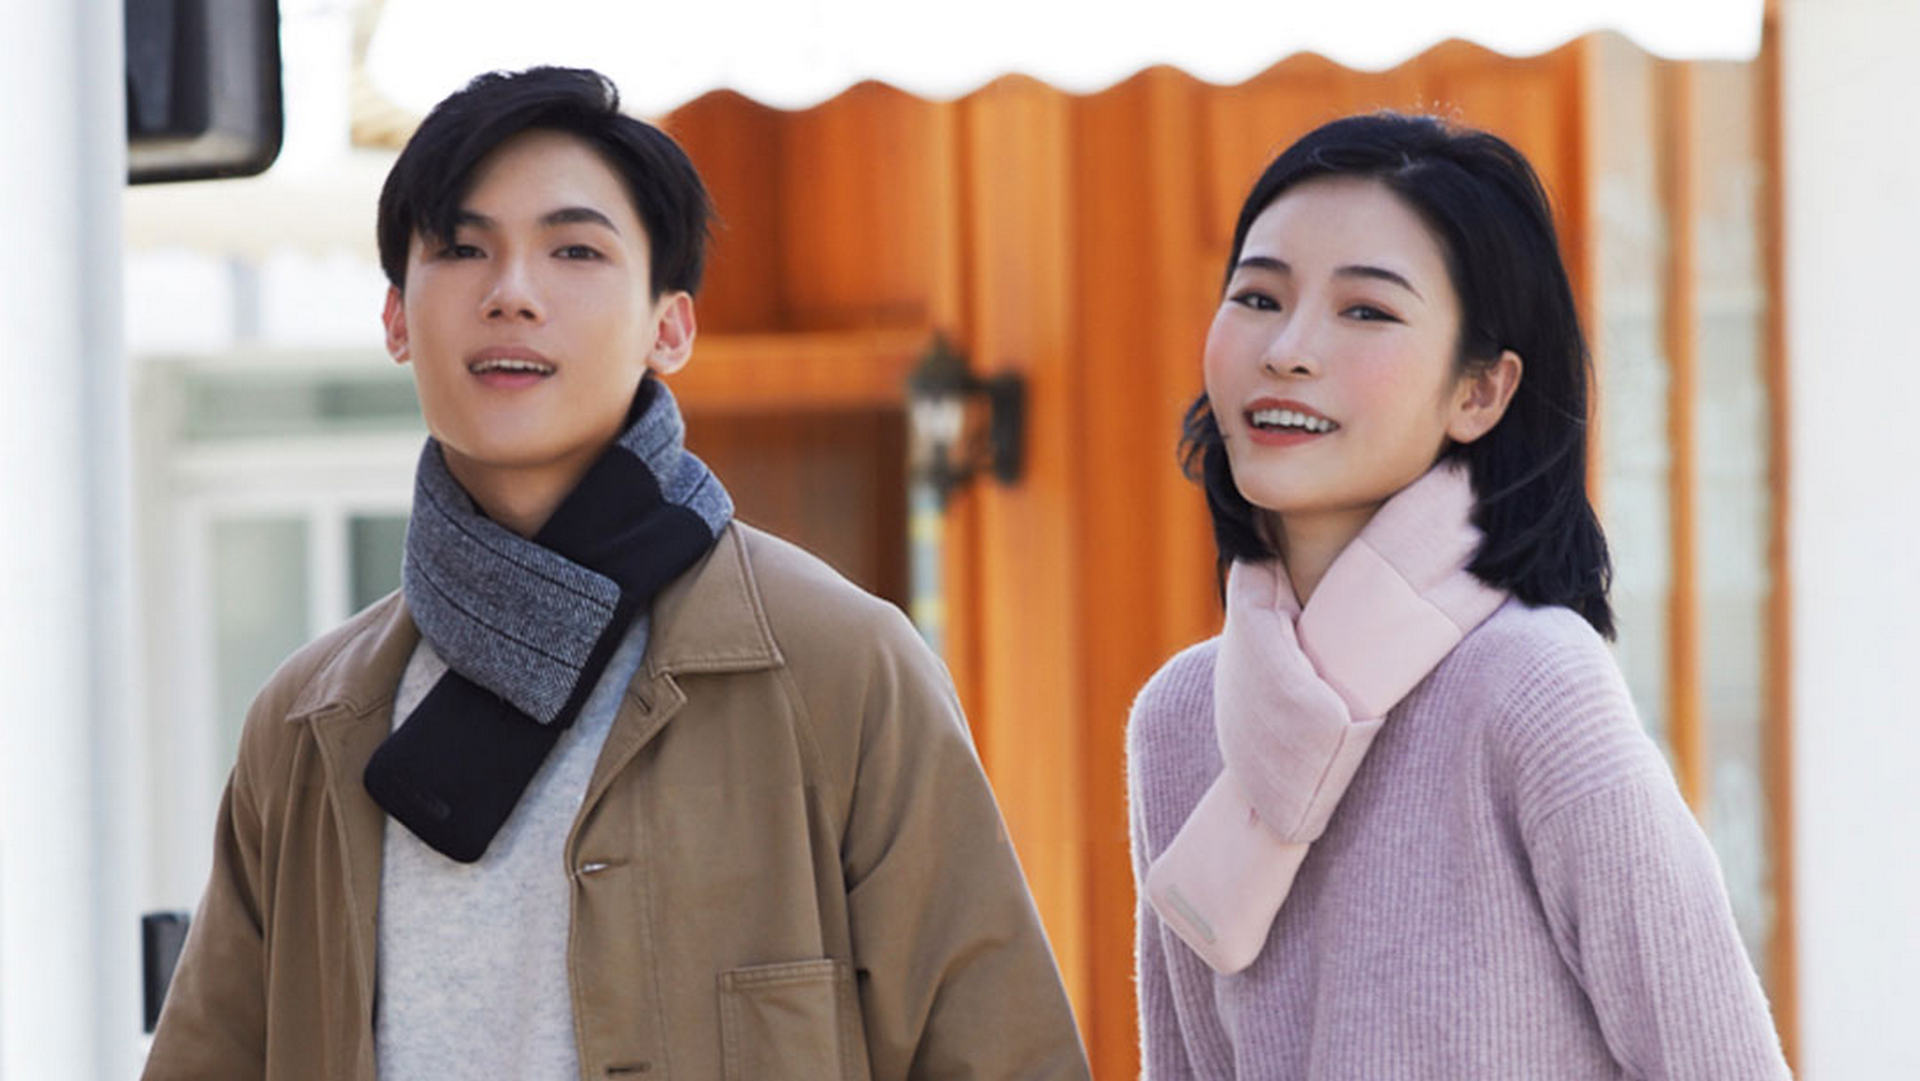 La nuova sciarpa elettrica riscaldante di Xiaomi YouPin debutta in  crowdfunding 